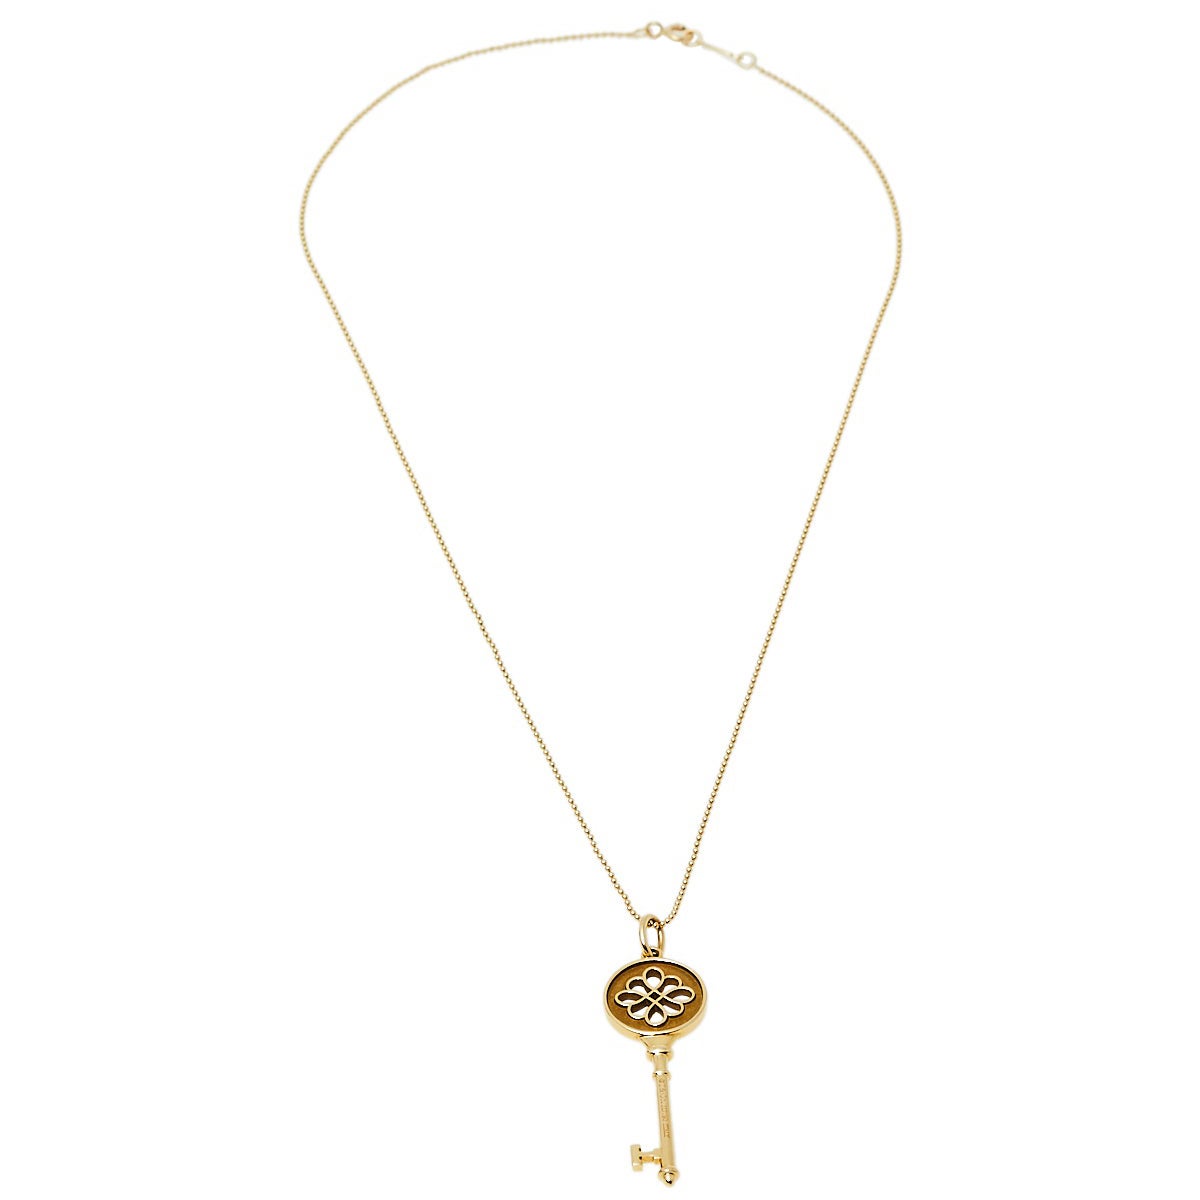 Tiffany & Co. Tiffany Knot Key 18K Yellow Gold Pendant Necklace